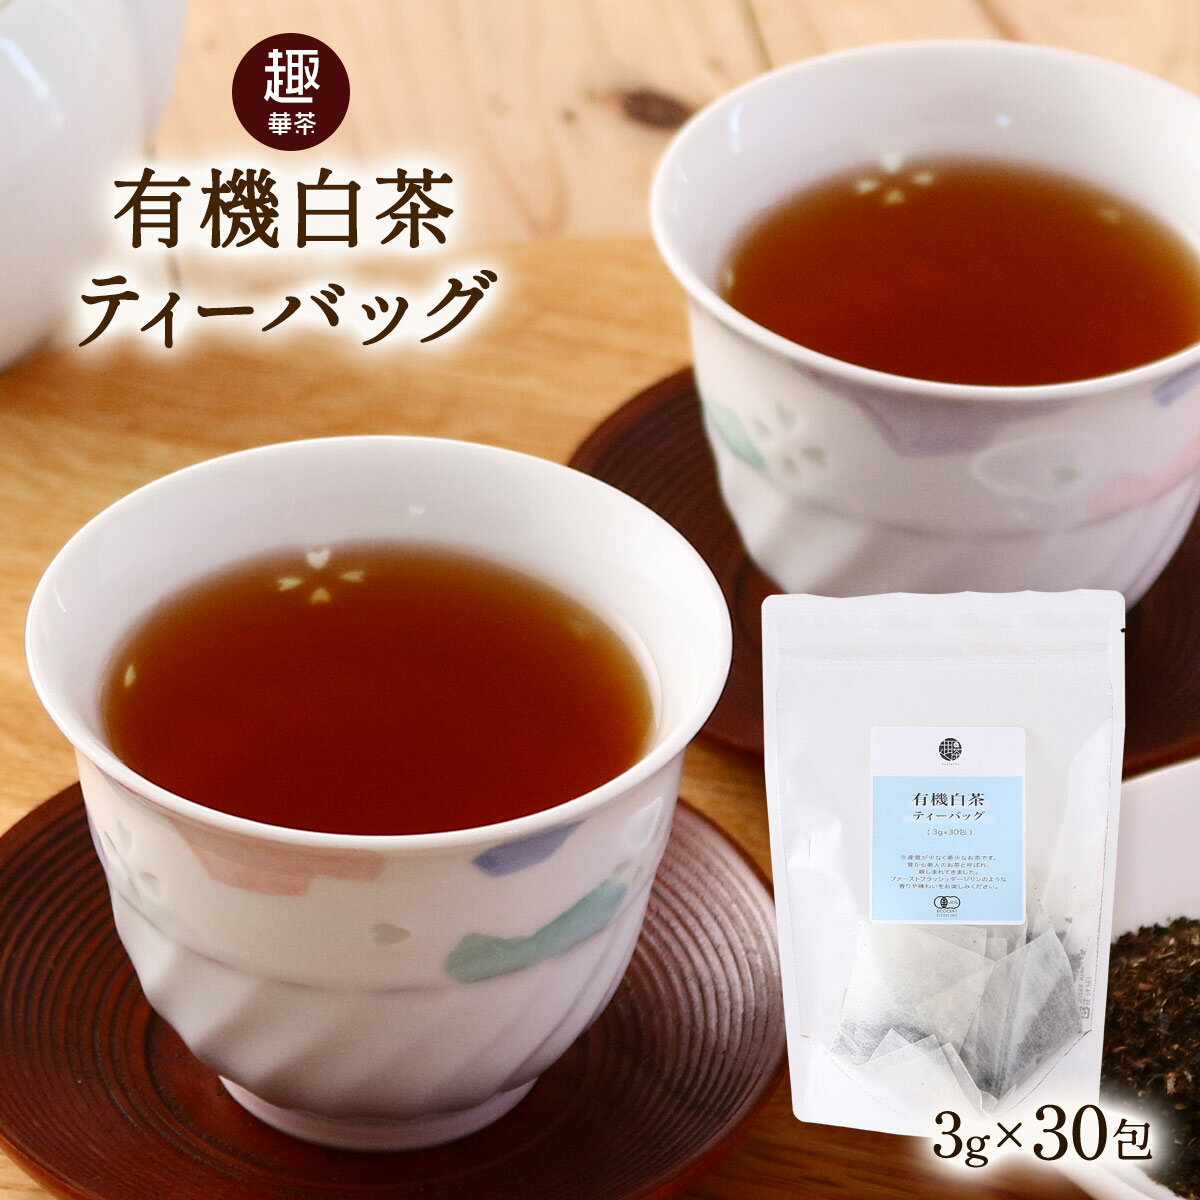 [趣華茶] 茶葉 有機白茶ティーバッグ 3g×30包 /茶葉